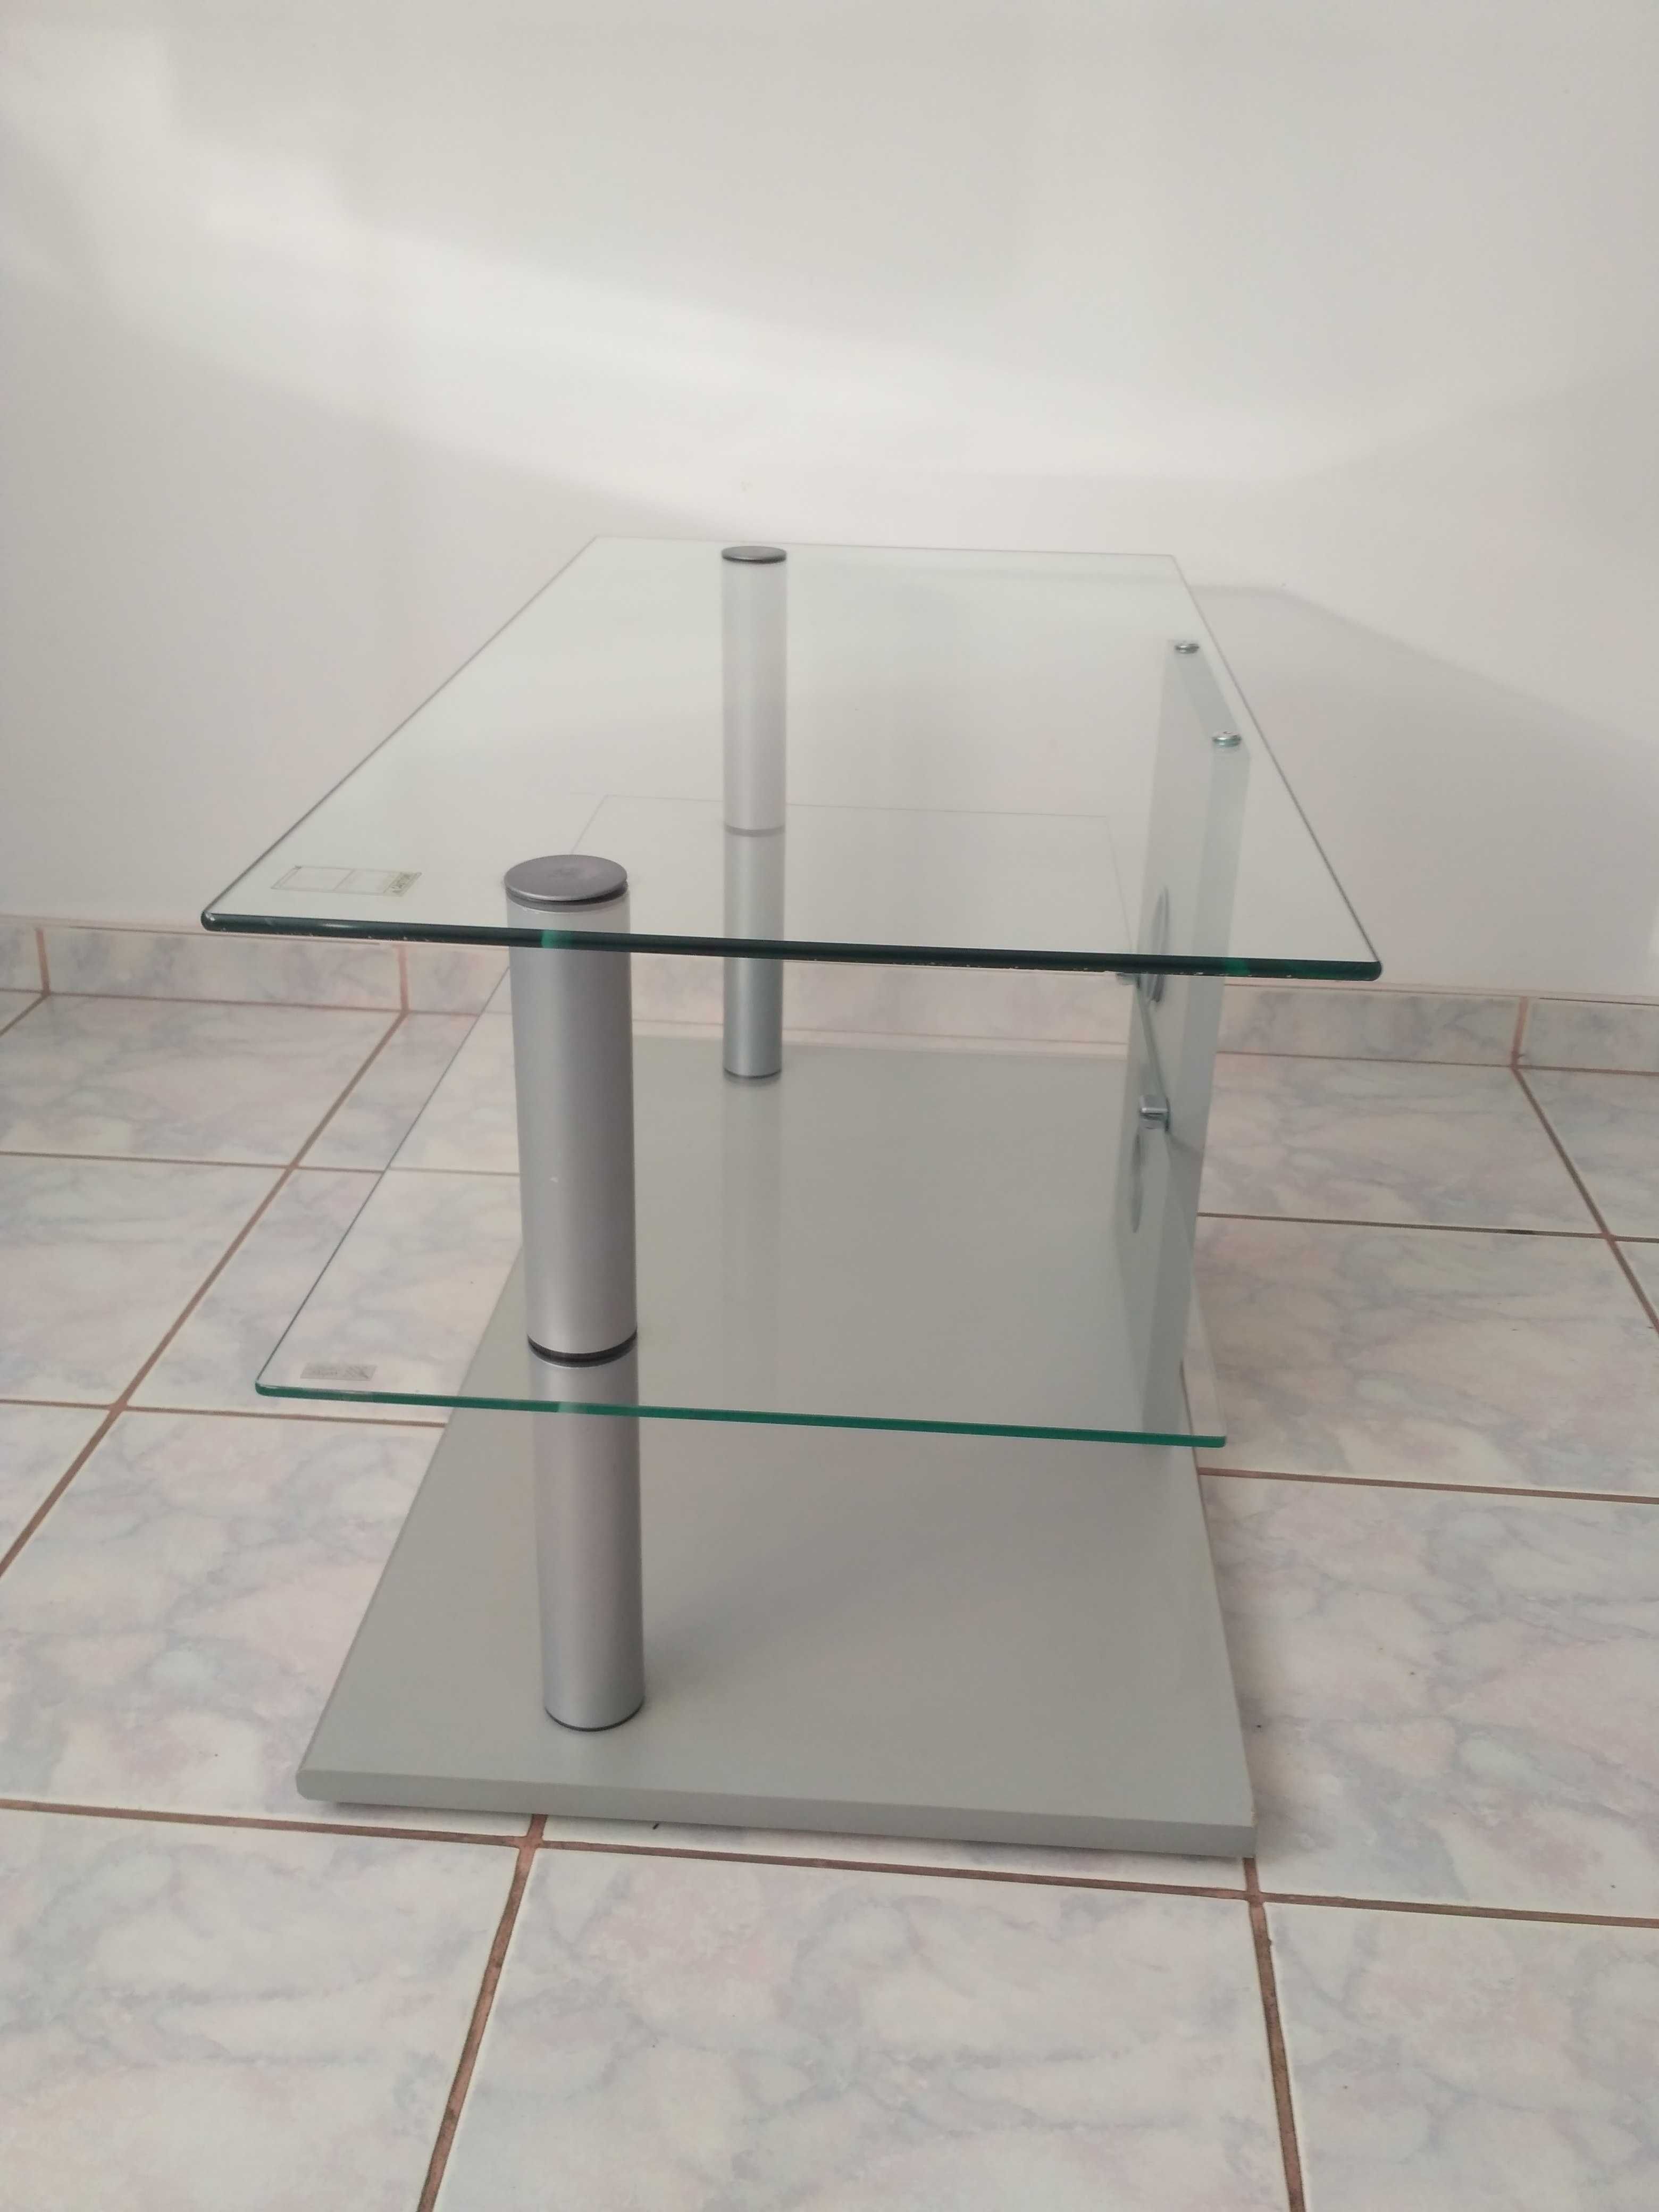 prostokątny szklany stolik pod sprzęt RTV *półka pod telewizor